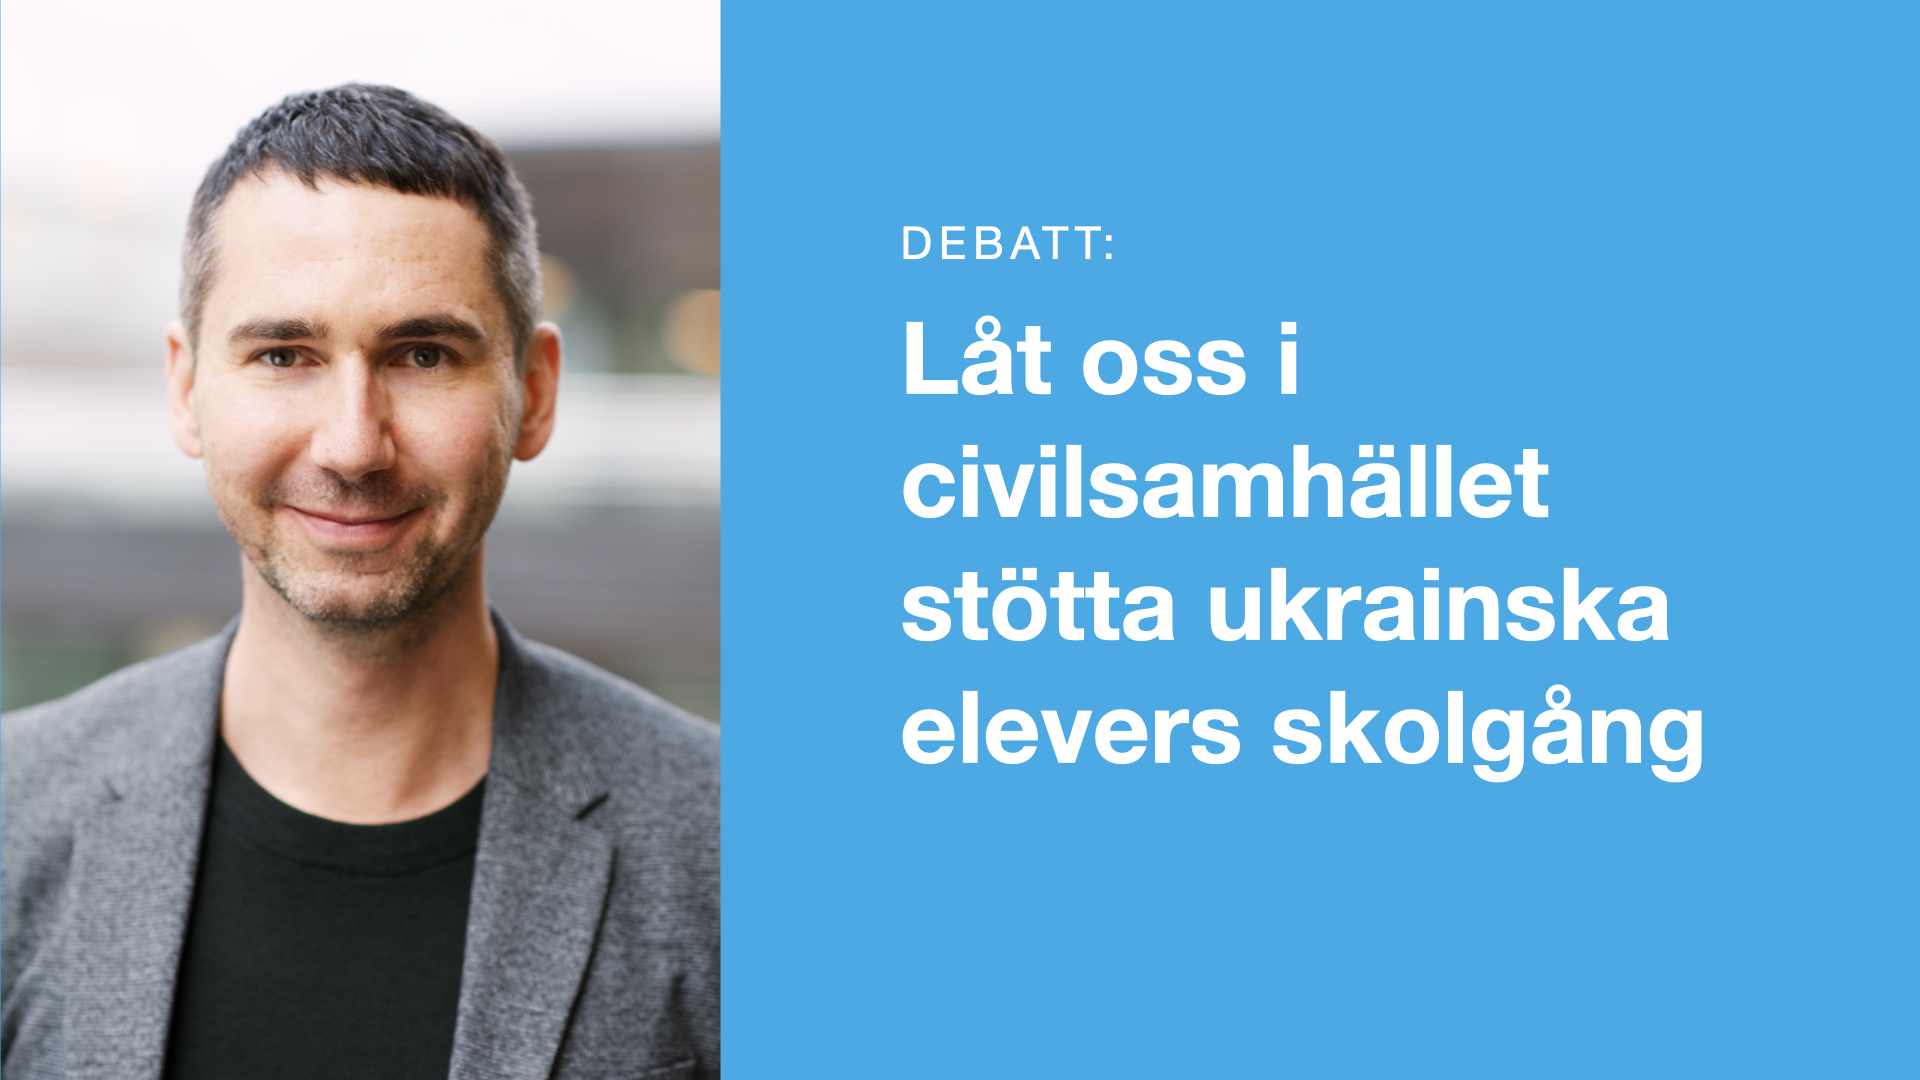 ”Låt oss i civilsamhället stötta ukrainska elevers skolgång” – debattartikel i Göteborgs-Posten